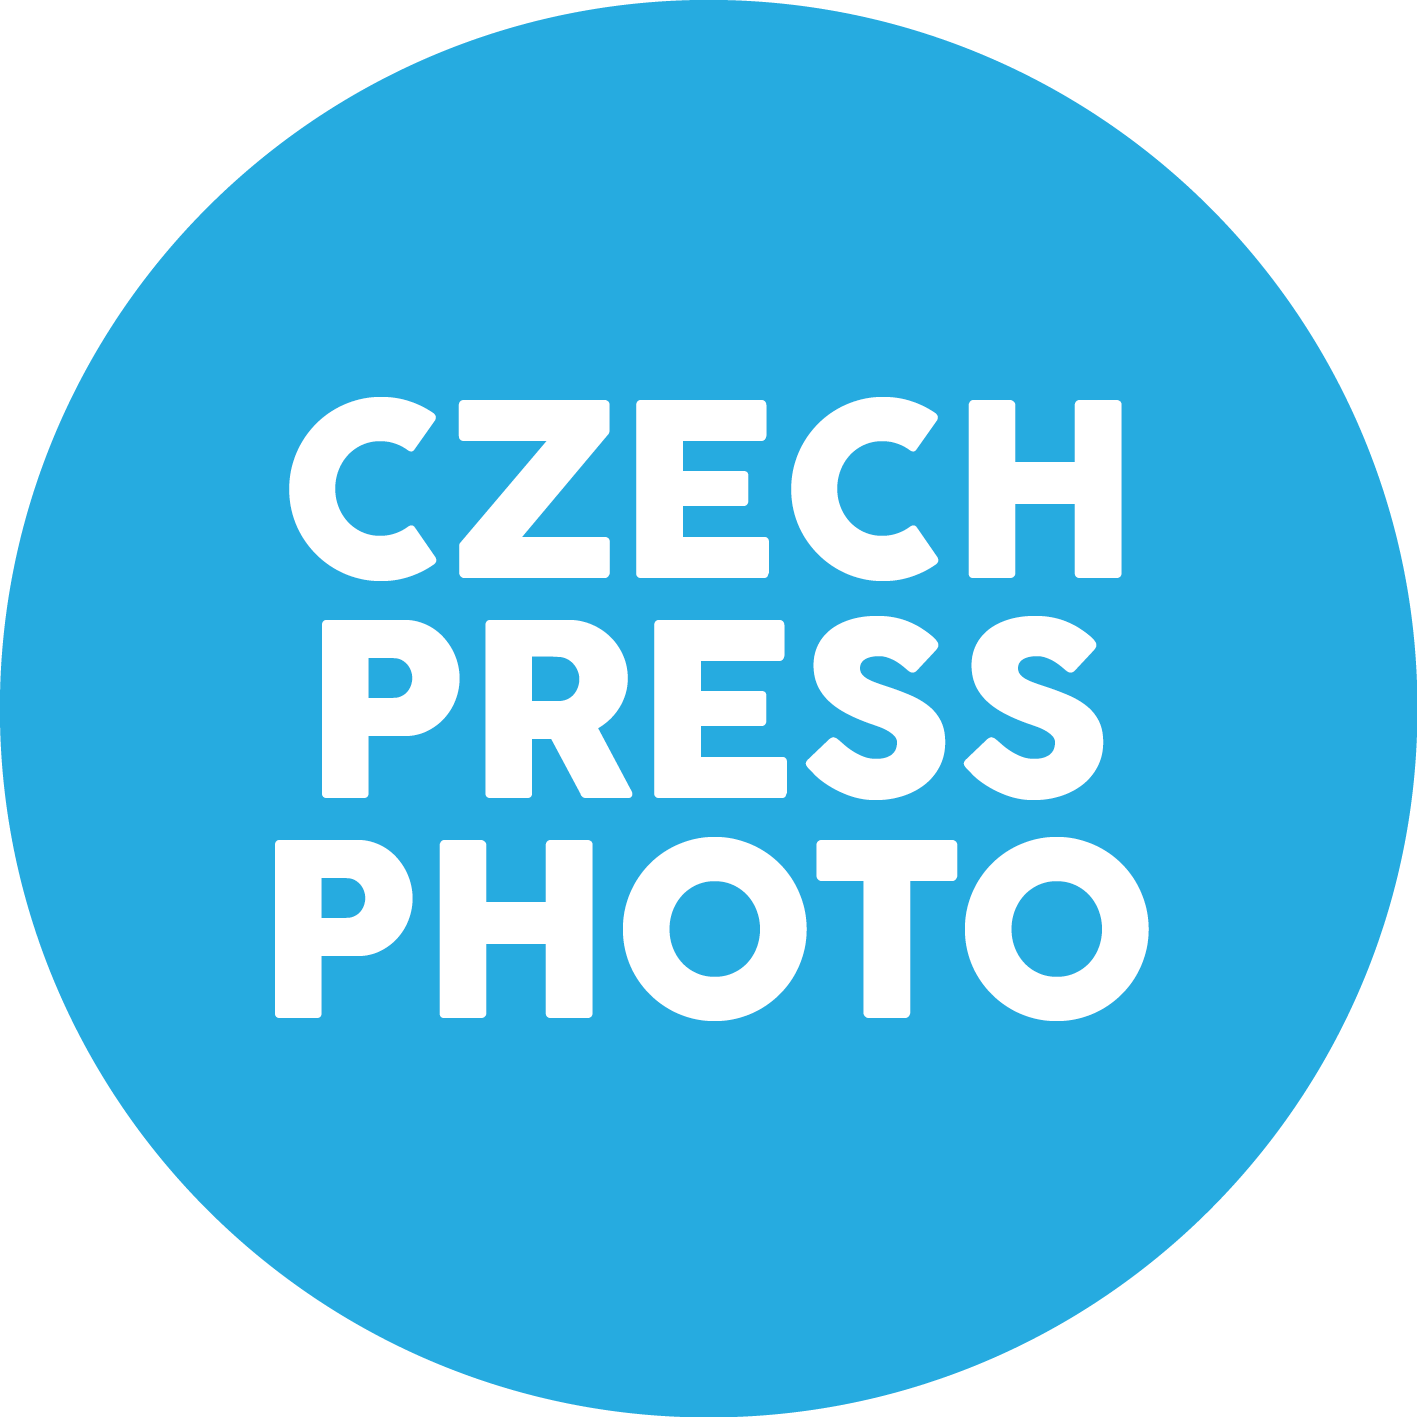 Soutěž Czech Press Photo je v krizi. A zde jsou důvody